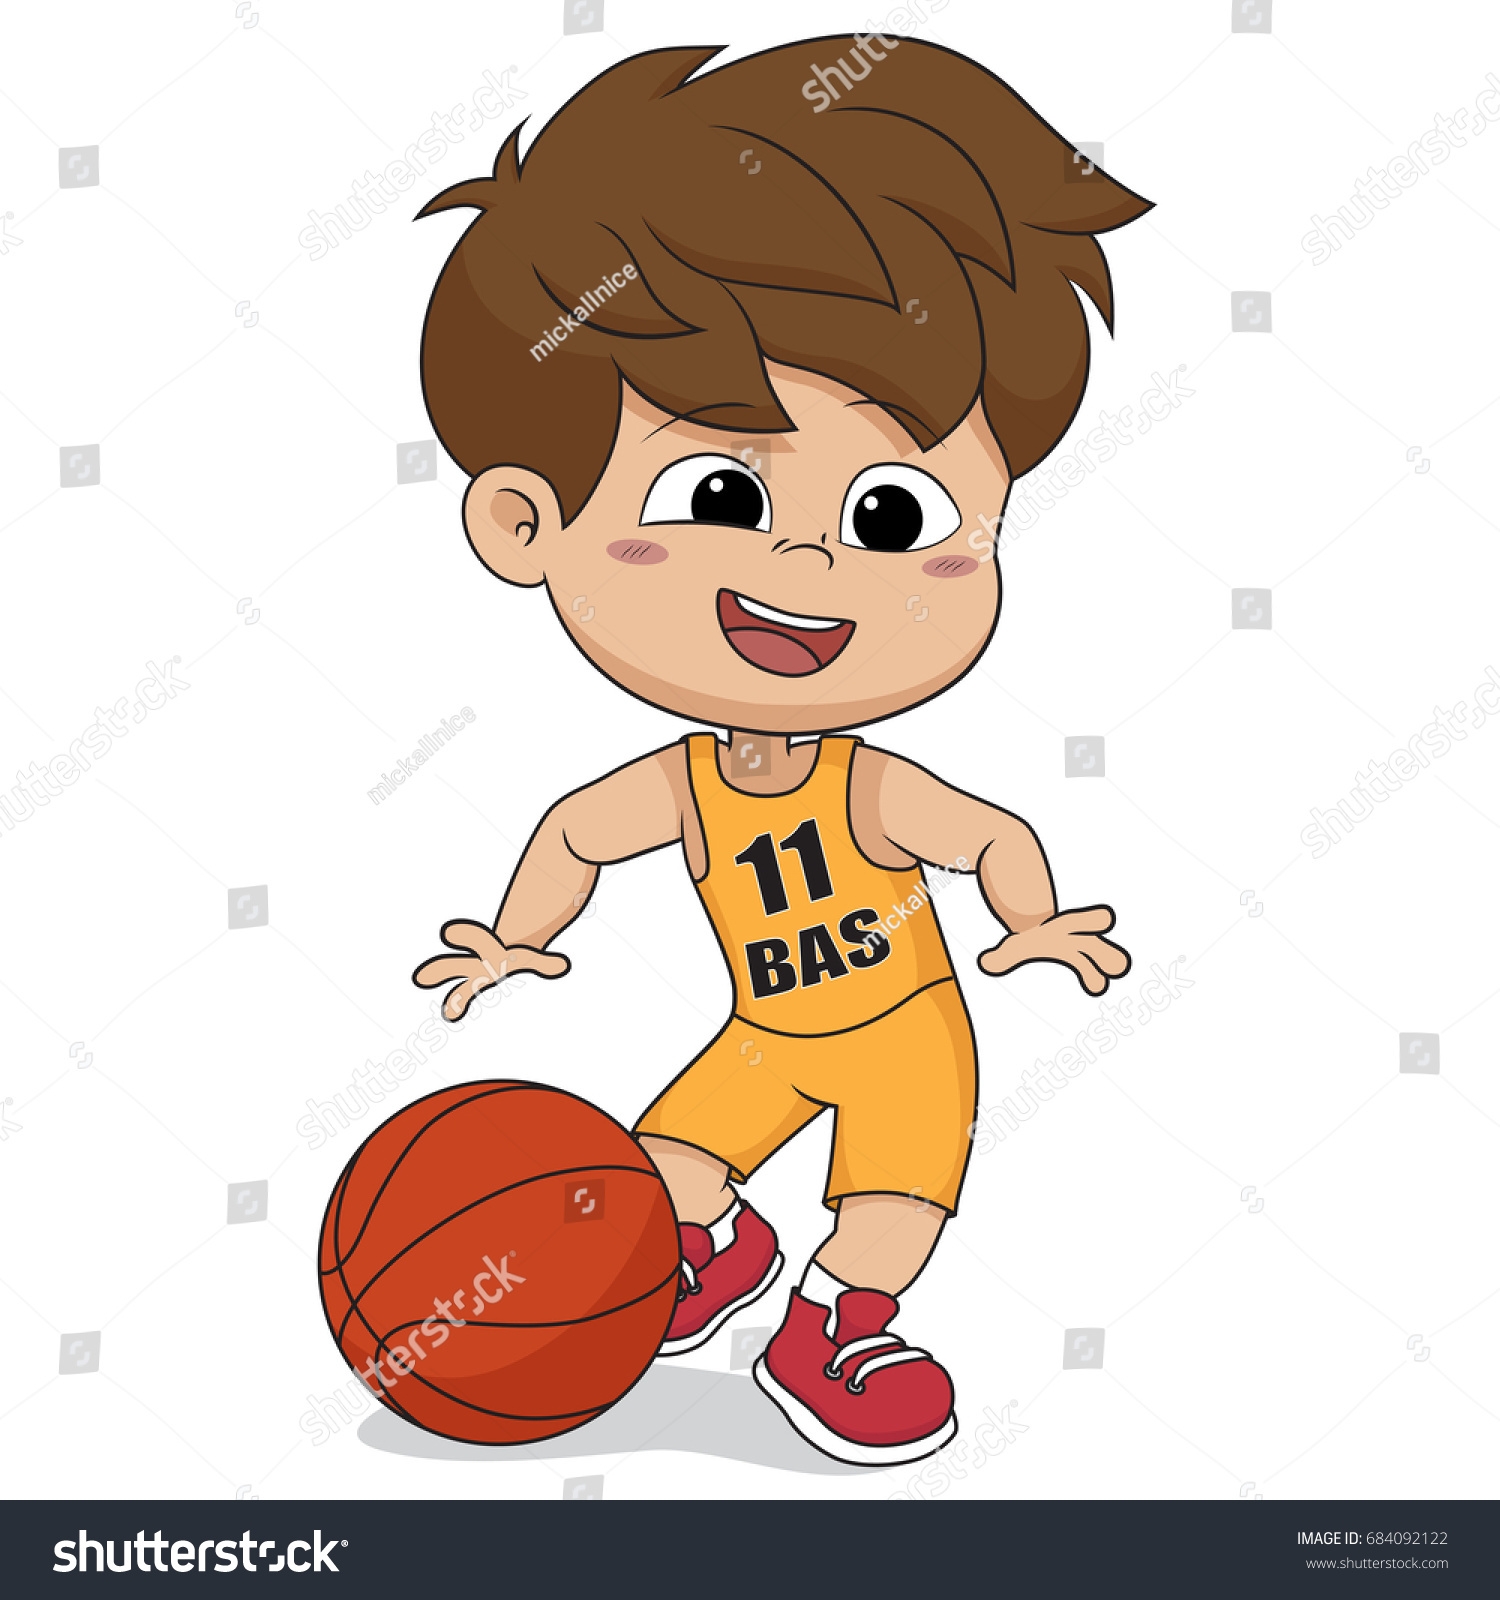 Баскетбол детские картинки на прозрачном фоне